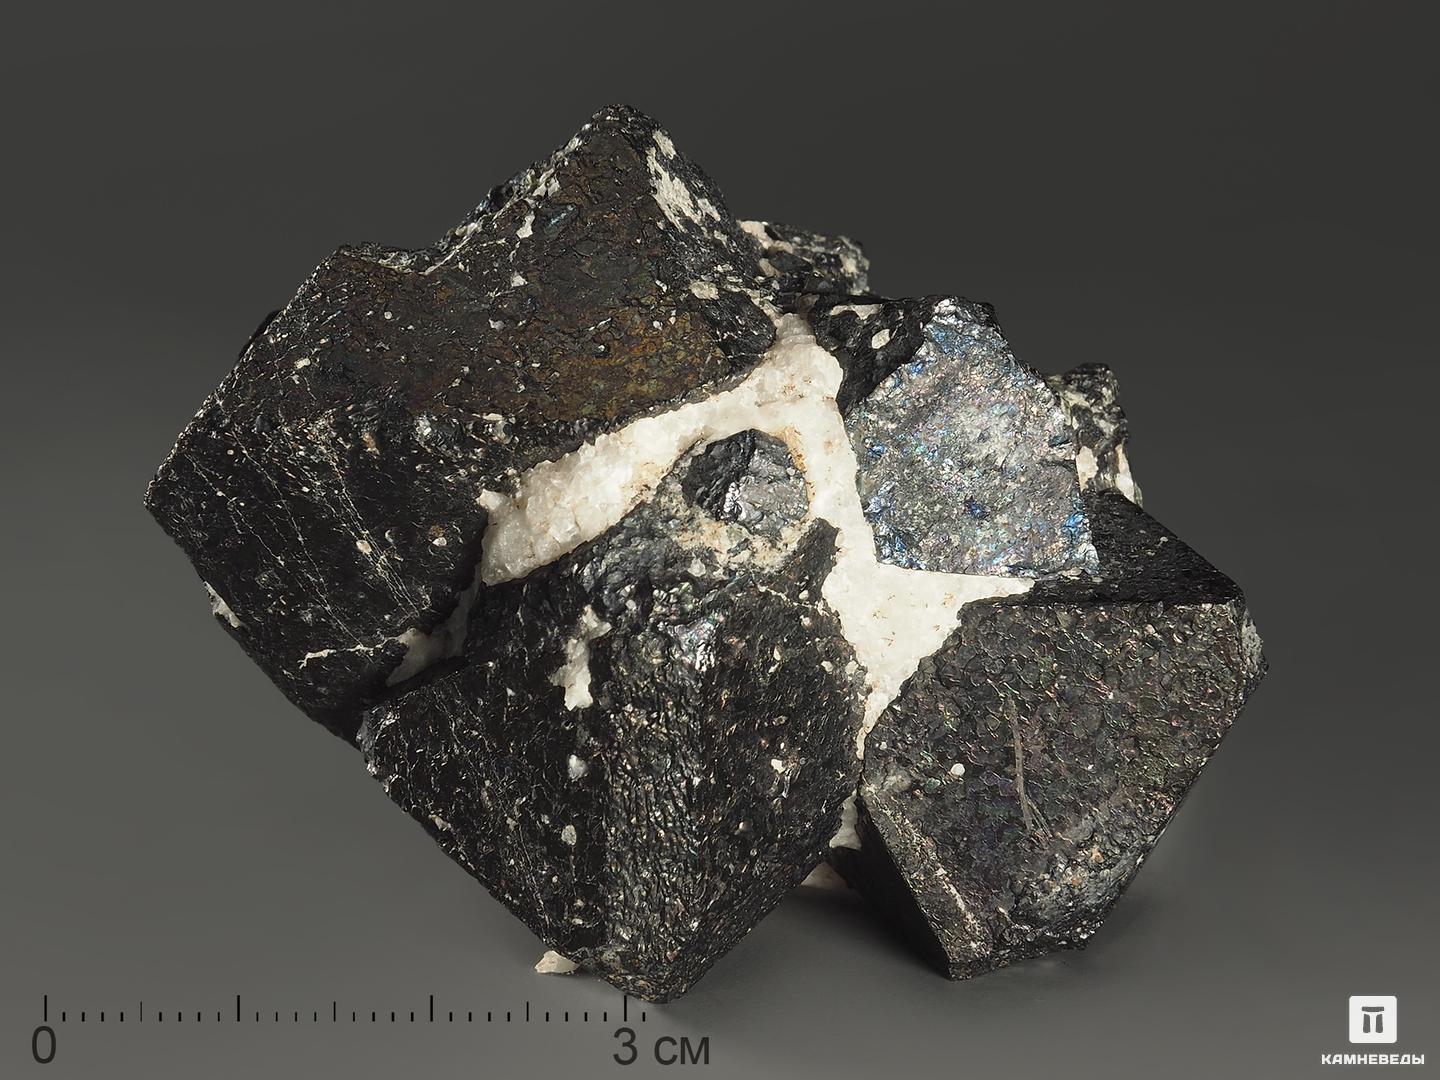 Crystal 1.16 5. Кристаллы магнетита. Магнетит, Кристалл 3-3,5 см. Магнетит, Кристалл 5-6 см. Магнетит, Кристалл 6х4,5 см.